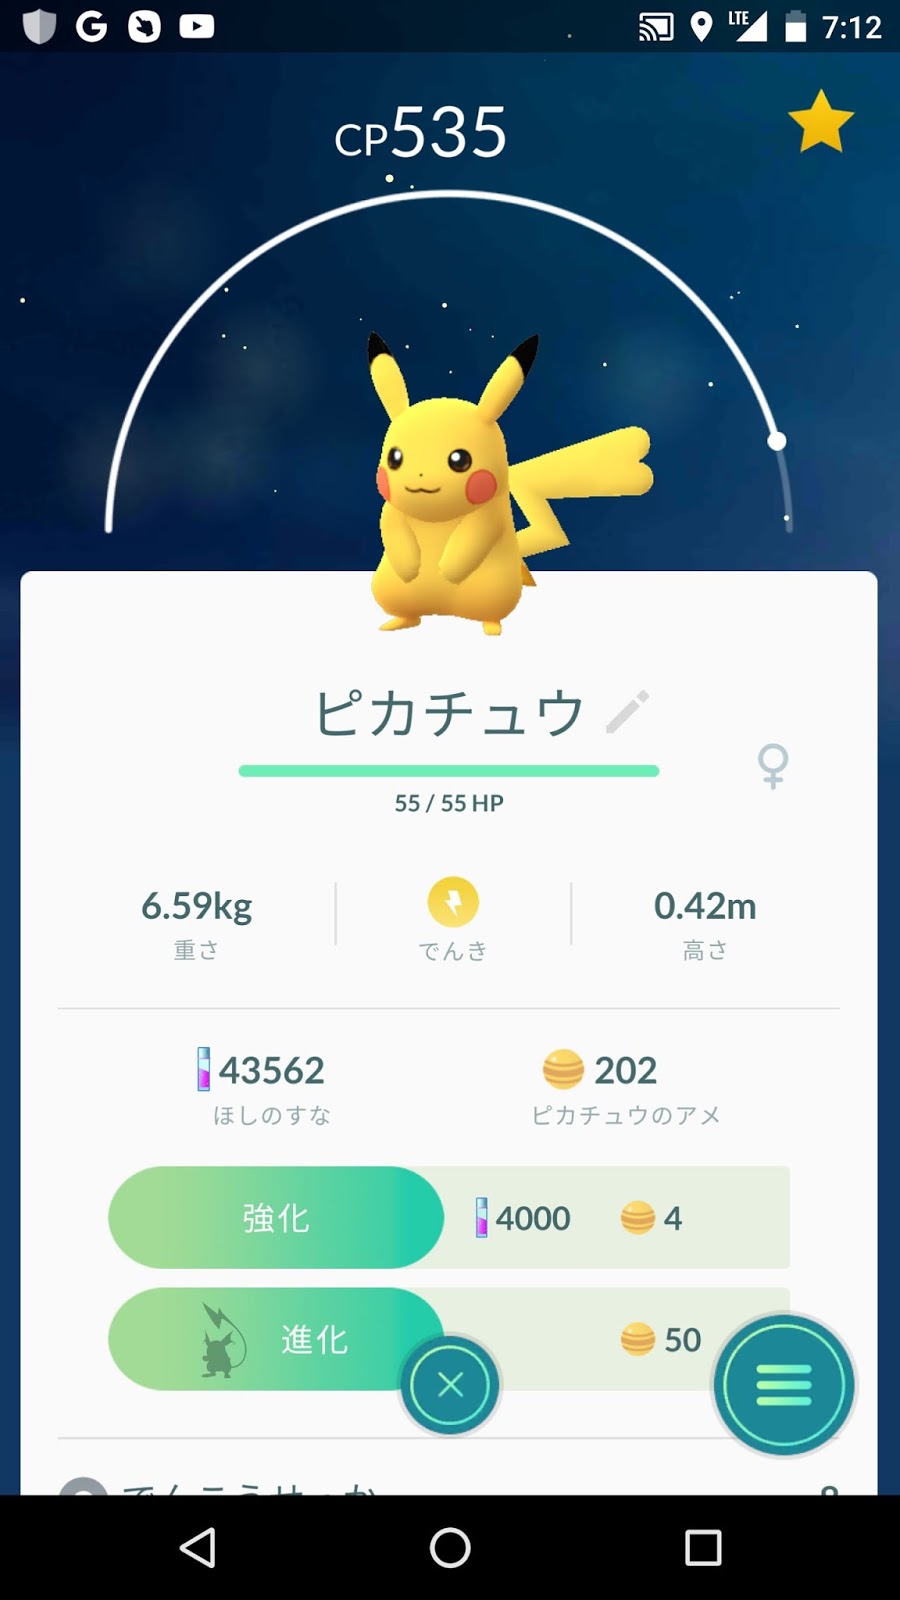 ポケモンgo日記 Pokemon Go Diary In Japan ポケモンgo 金銀 オス メス 写真図鑑 作成中 Pokemon Go Male Female Photographs